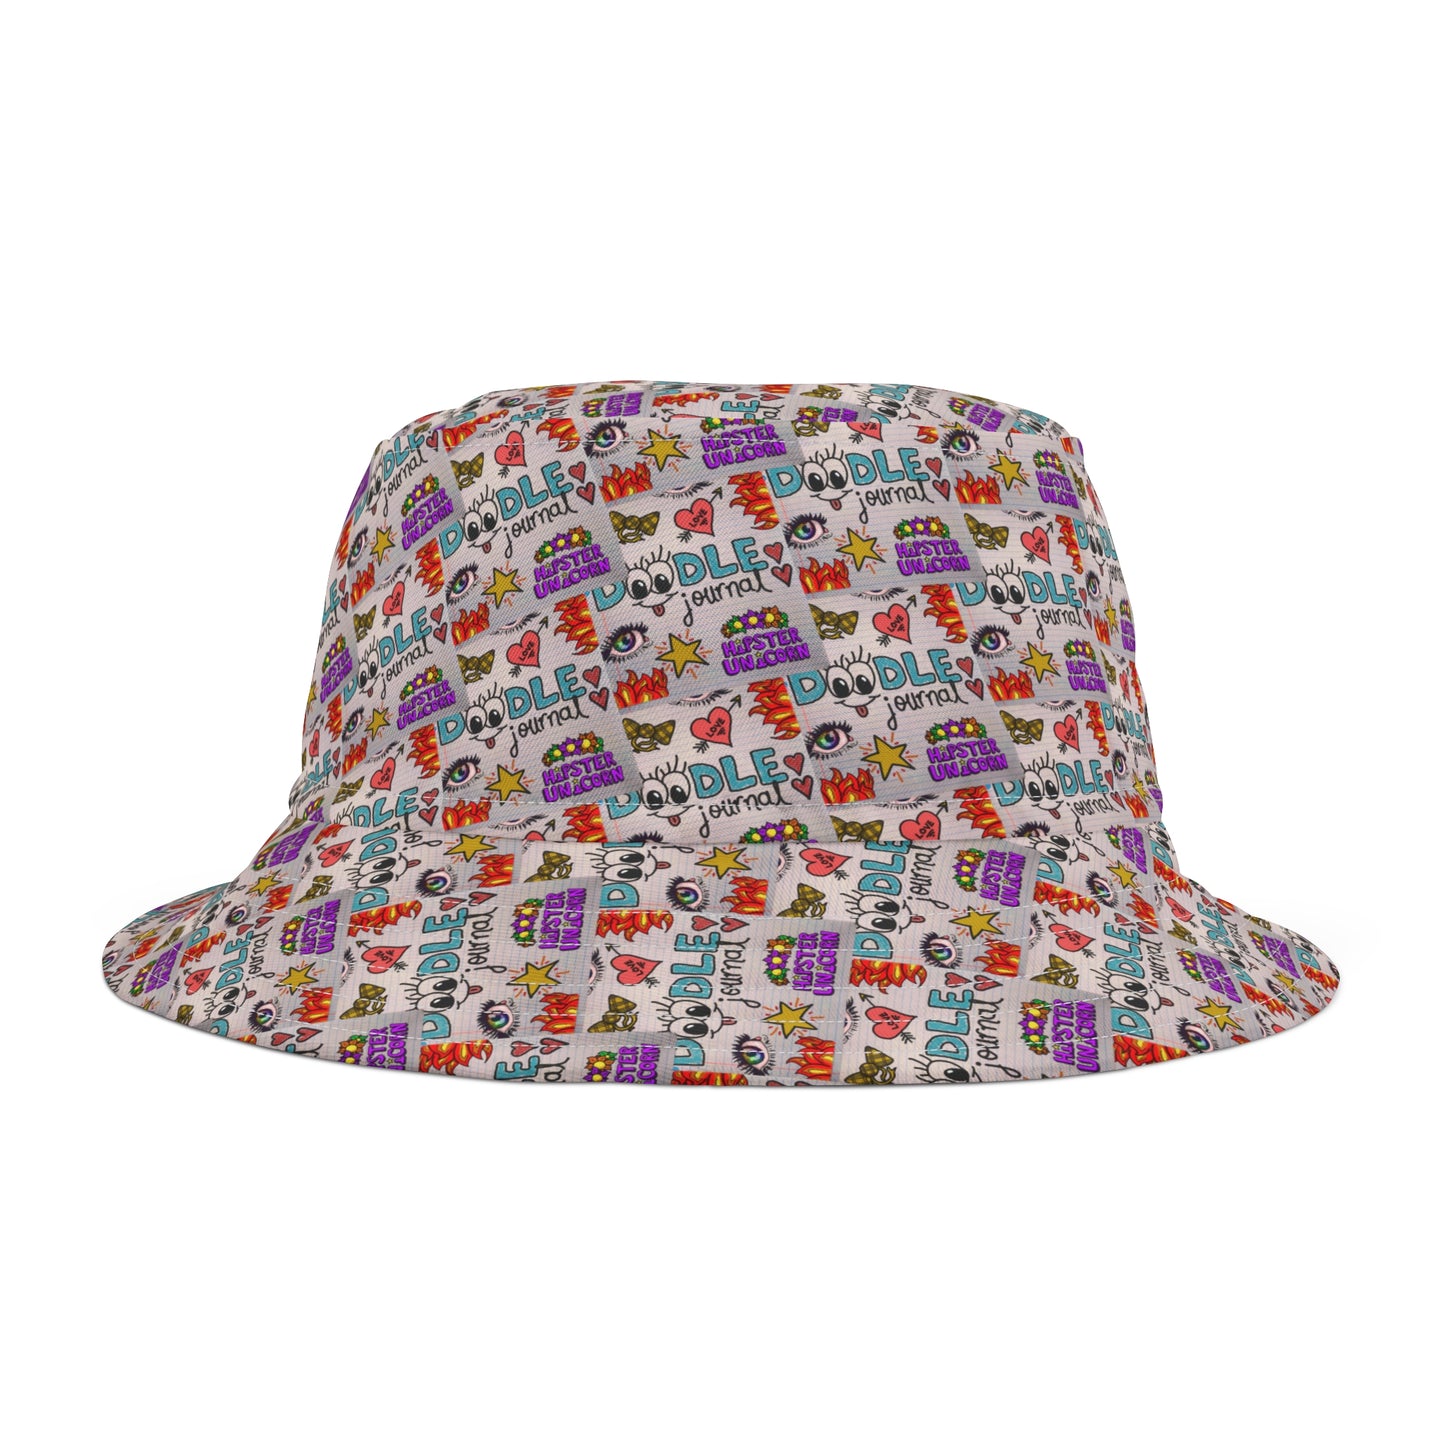 Doodle Journal Bucket Hat